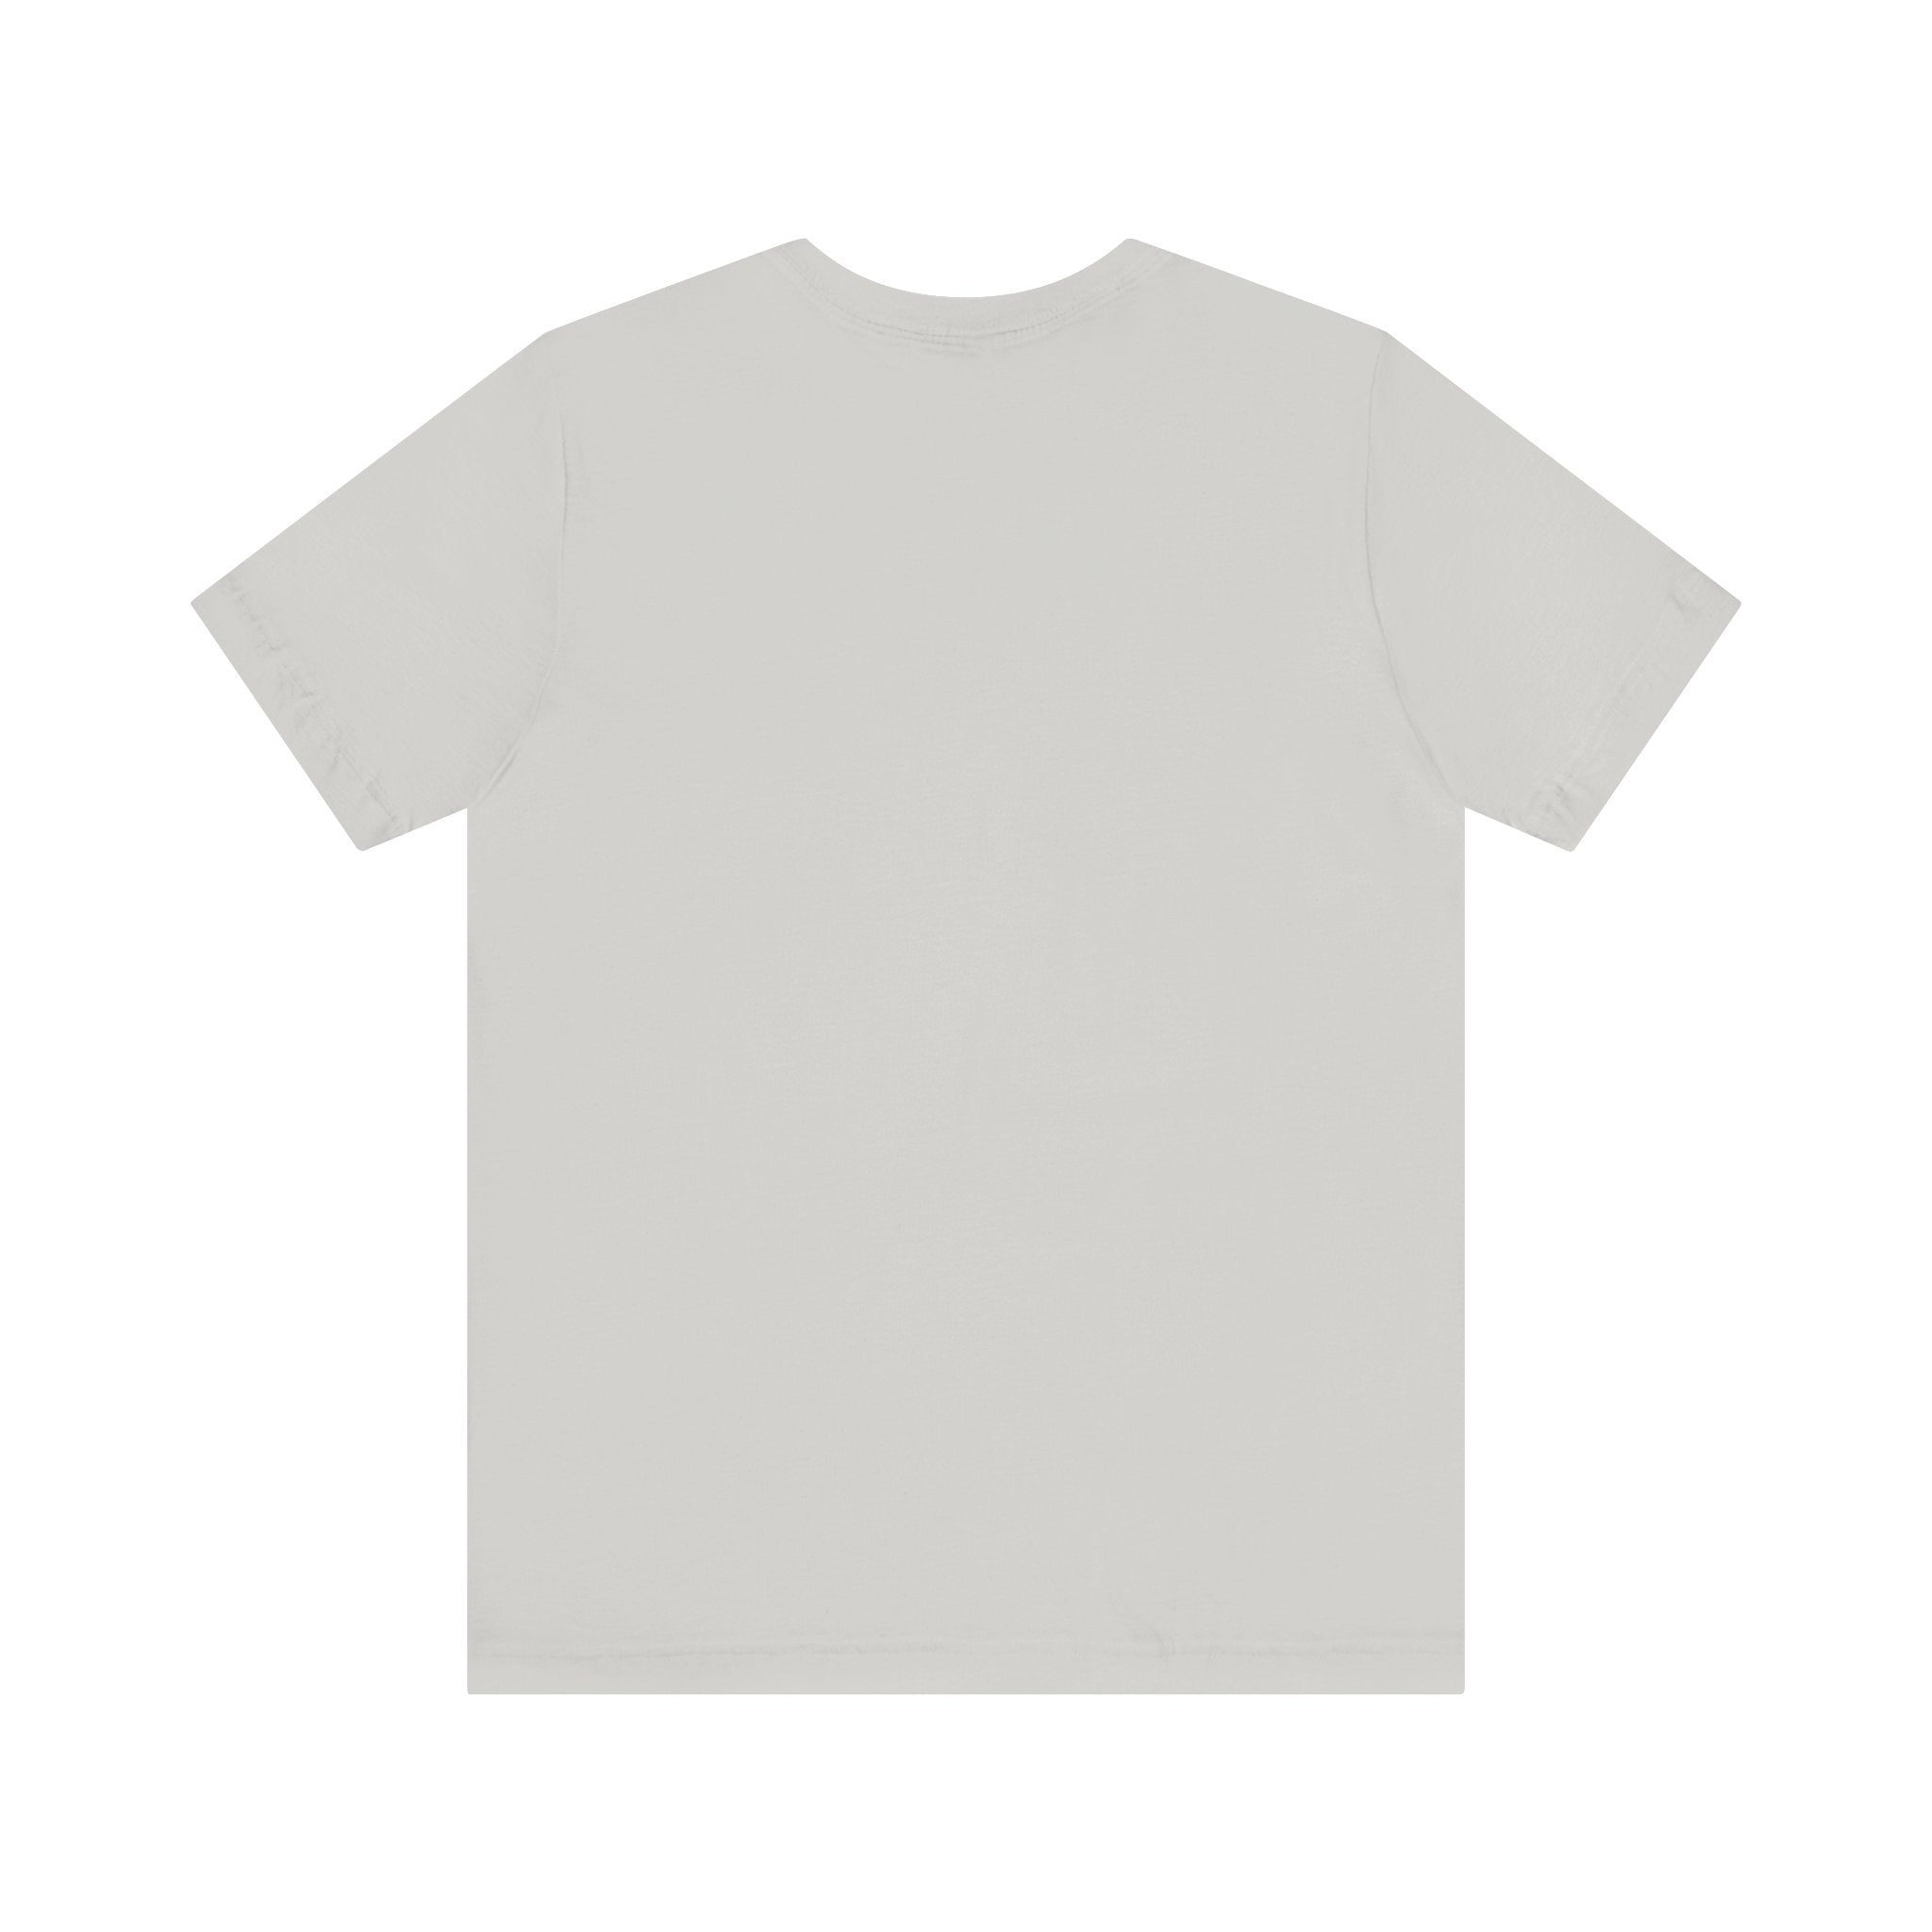 Best Dad Unisex Jersey Tee, Short Sleeve Tee Shirt, Regular Fit Crew Neck, Men's T-shirt, Women's T-shirt